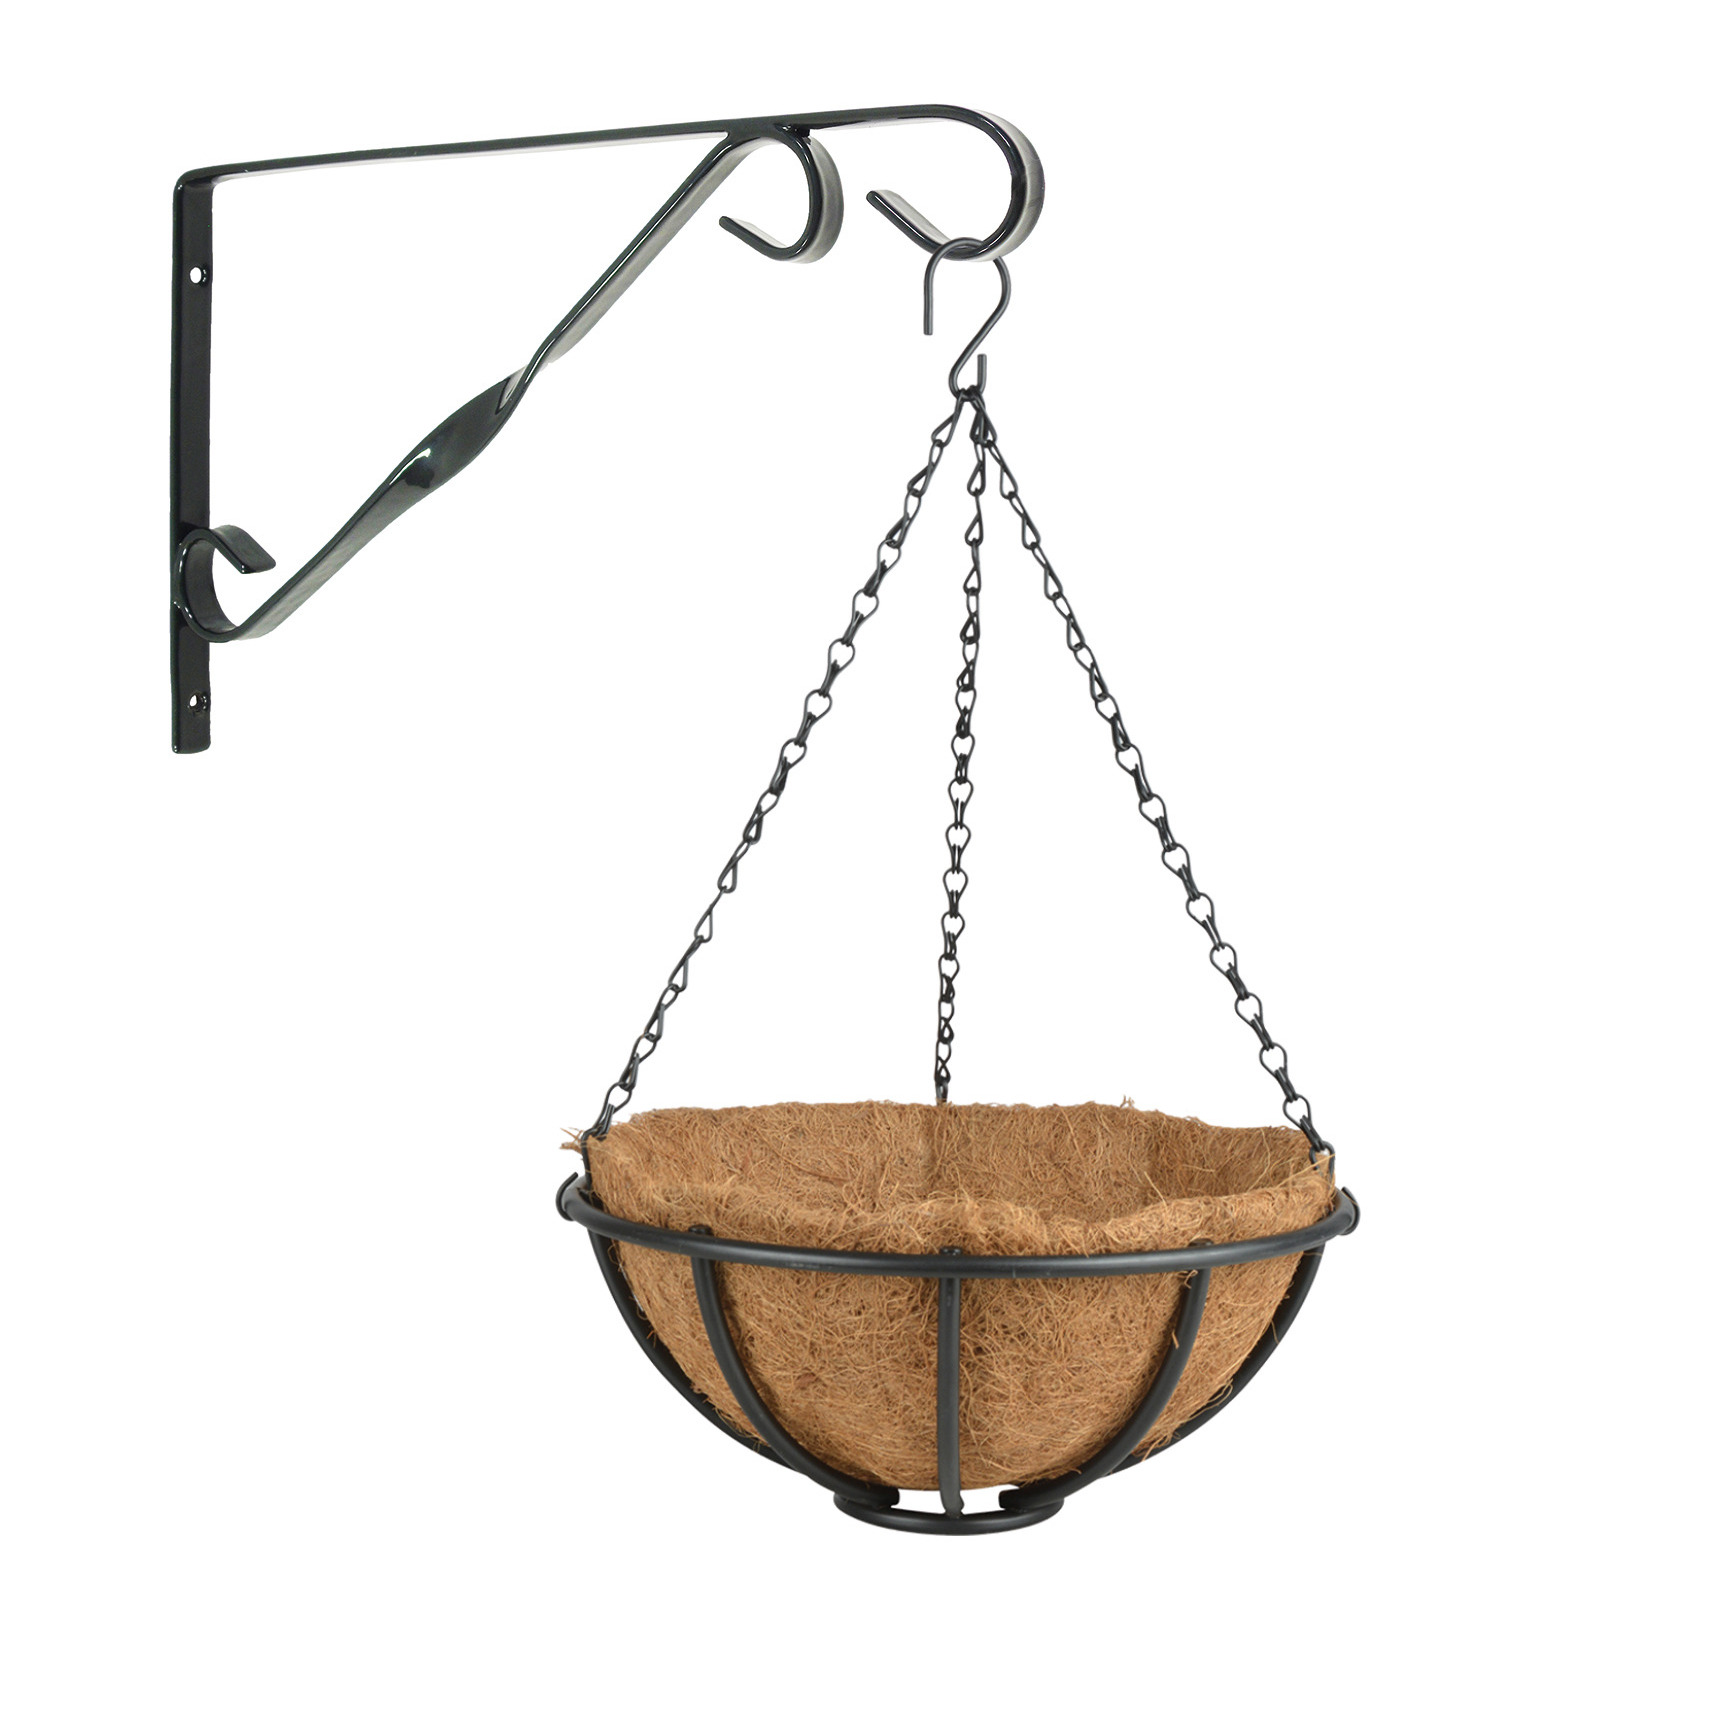 Hanging basket 30 cm met muurhaak metaal complete hangmand set